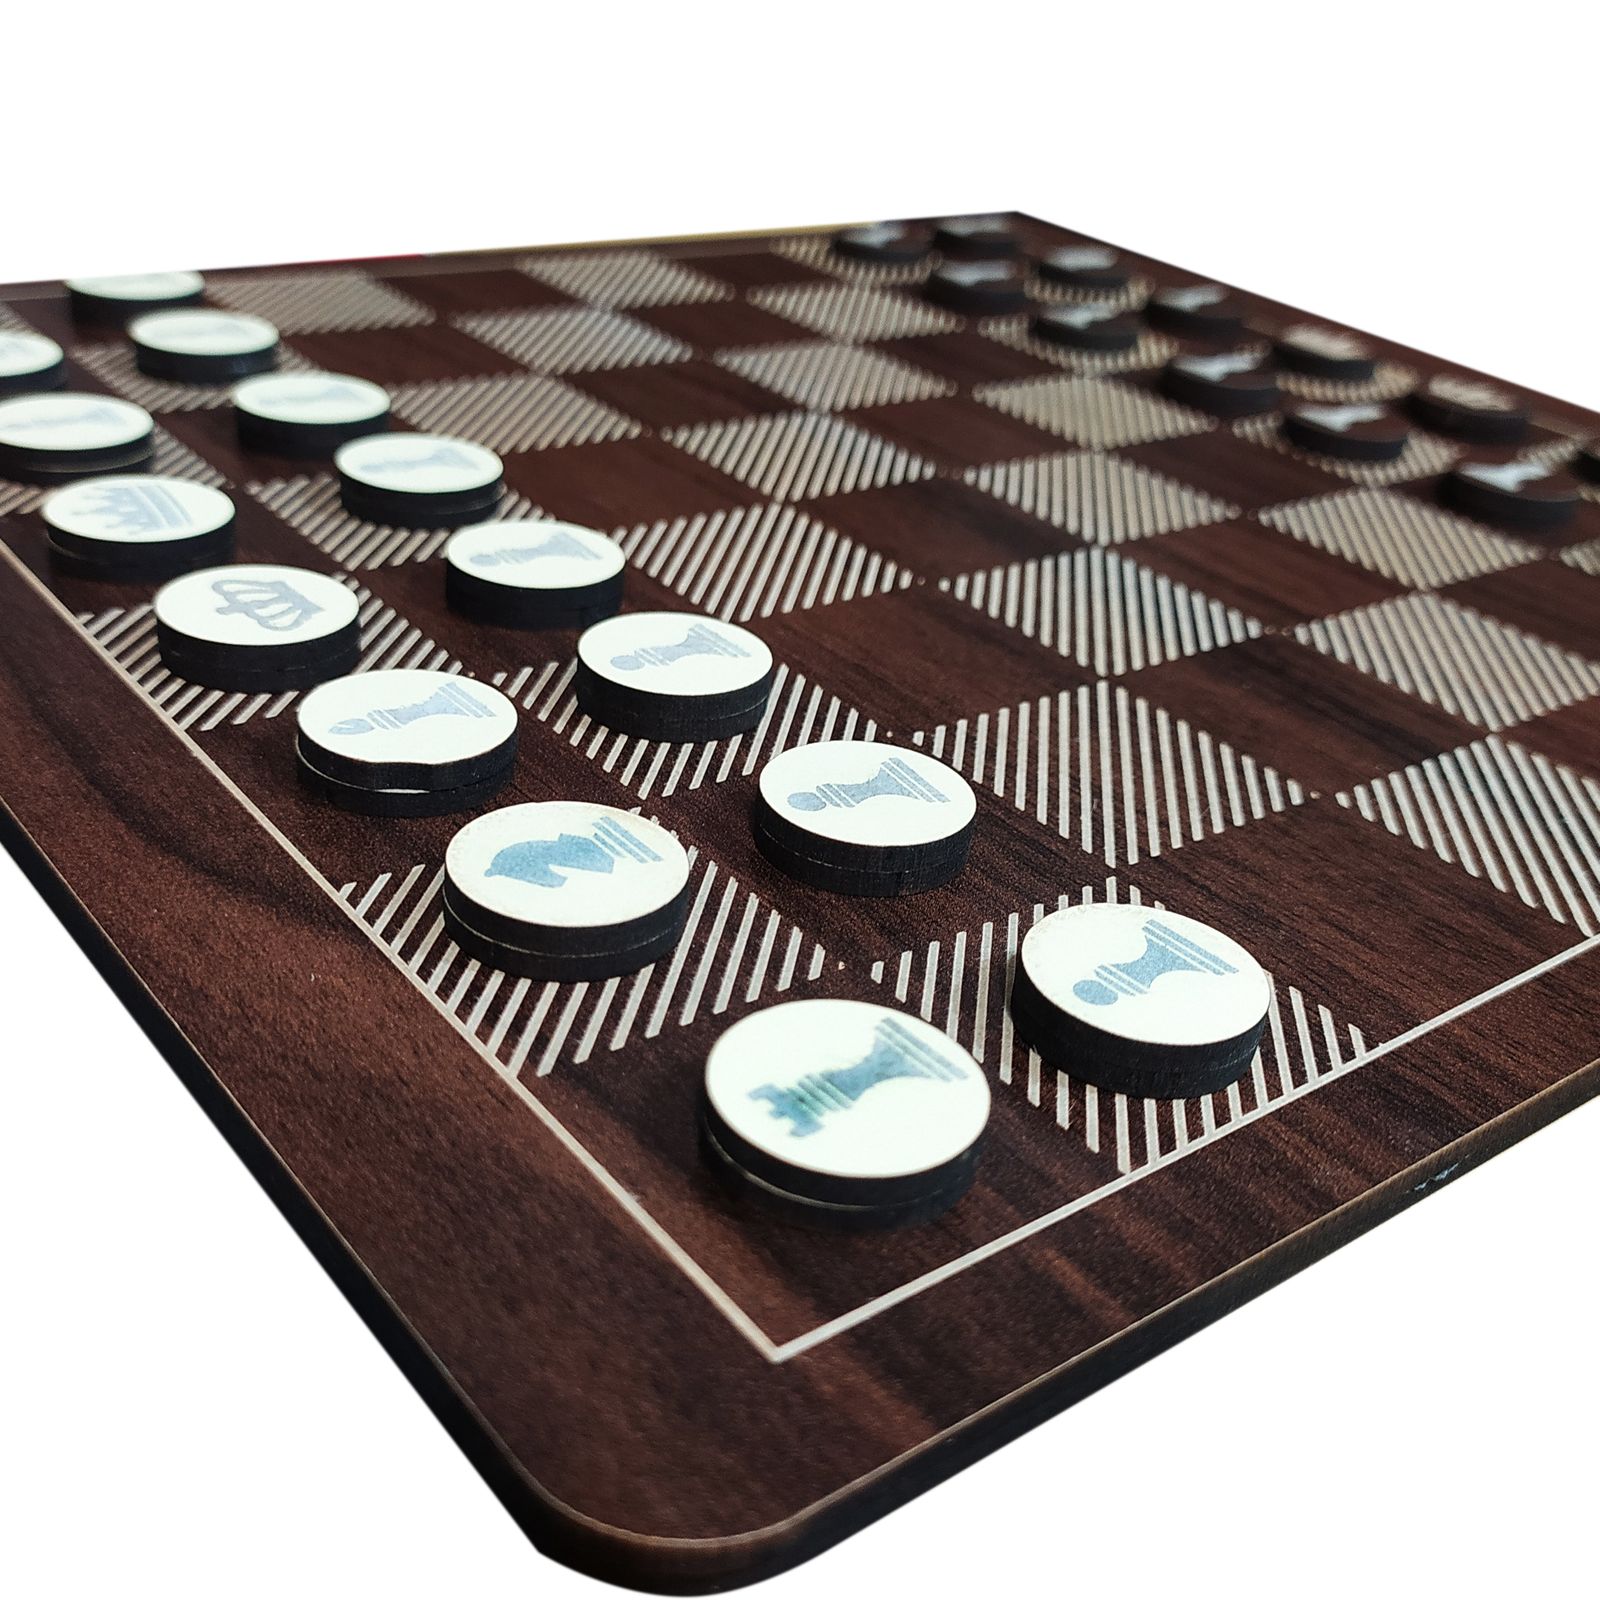 بازی فکری محصولات امید مدل دوز و شطرنج کد 132 -  - 3